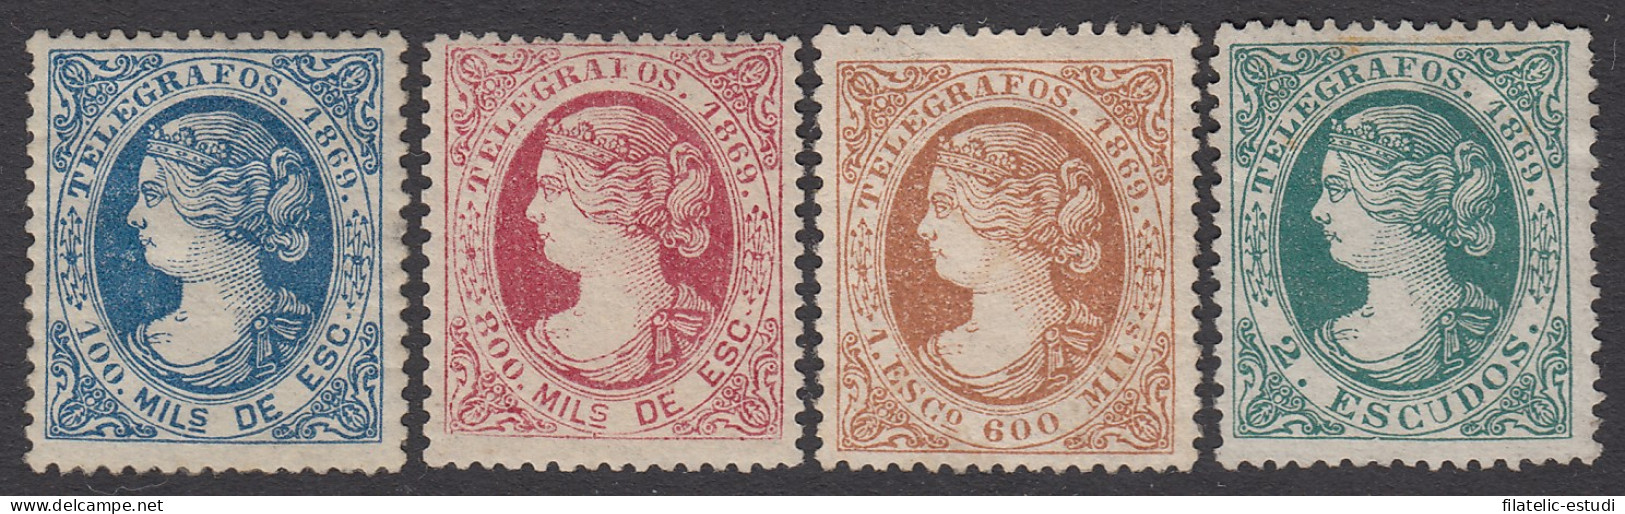 España Spain Telégrafos 26/29 1869 Isabel II  MH - Steuermarken/Dienstmarken